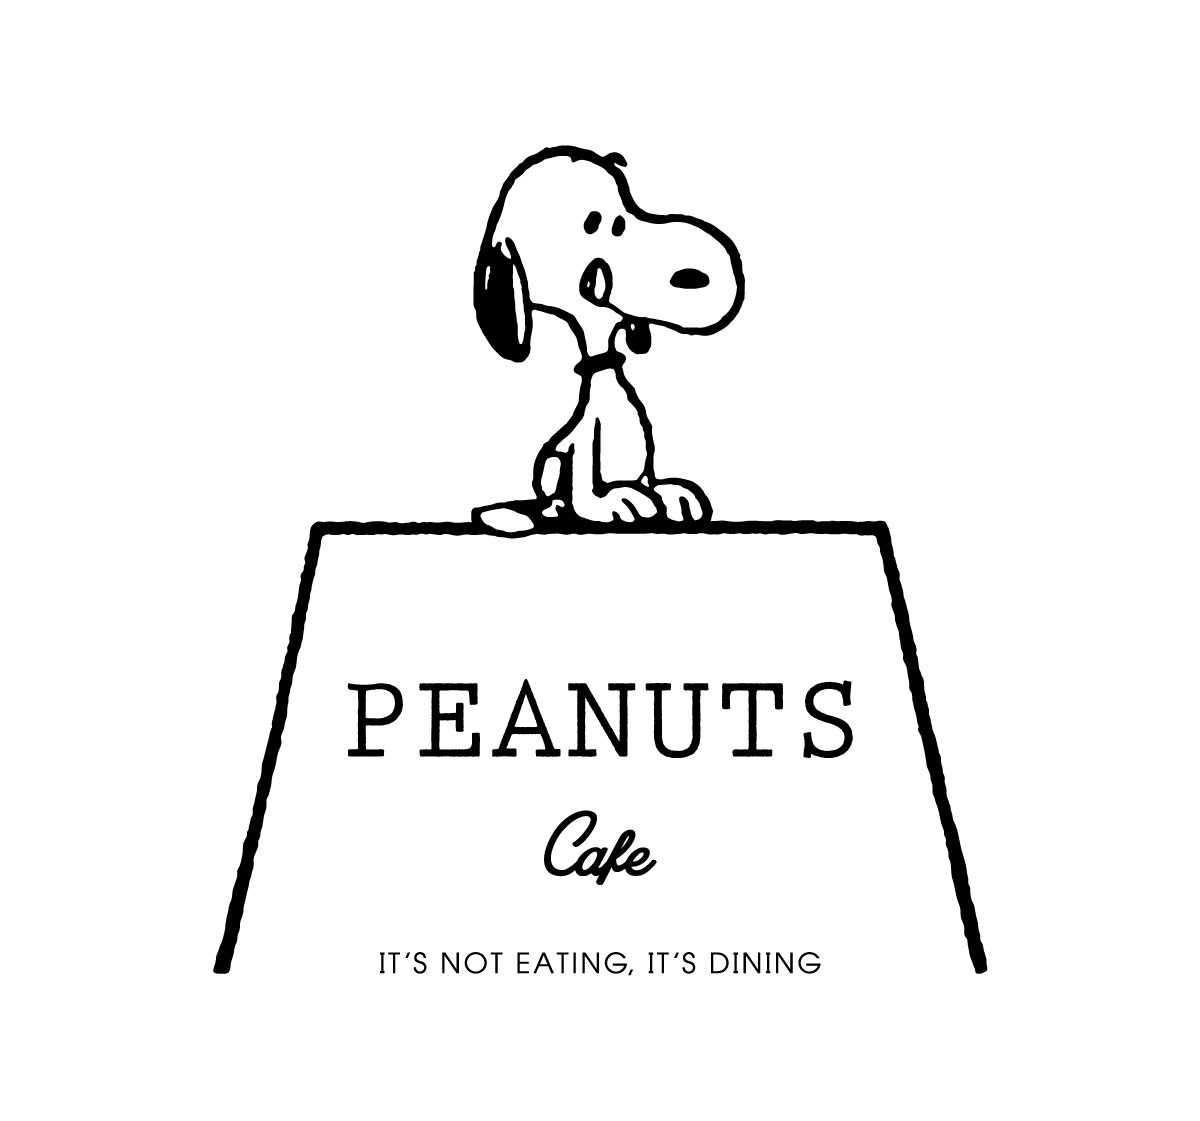 目黒川沿いの一軒家に本格的なカリフォルニアダイニング スヌーピーのテーマカフェ Peanuts Cafe オープン 株式会社ソニー クリエイティブプロダクツのプレスリリース